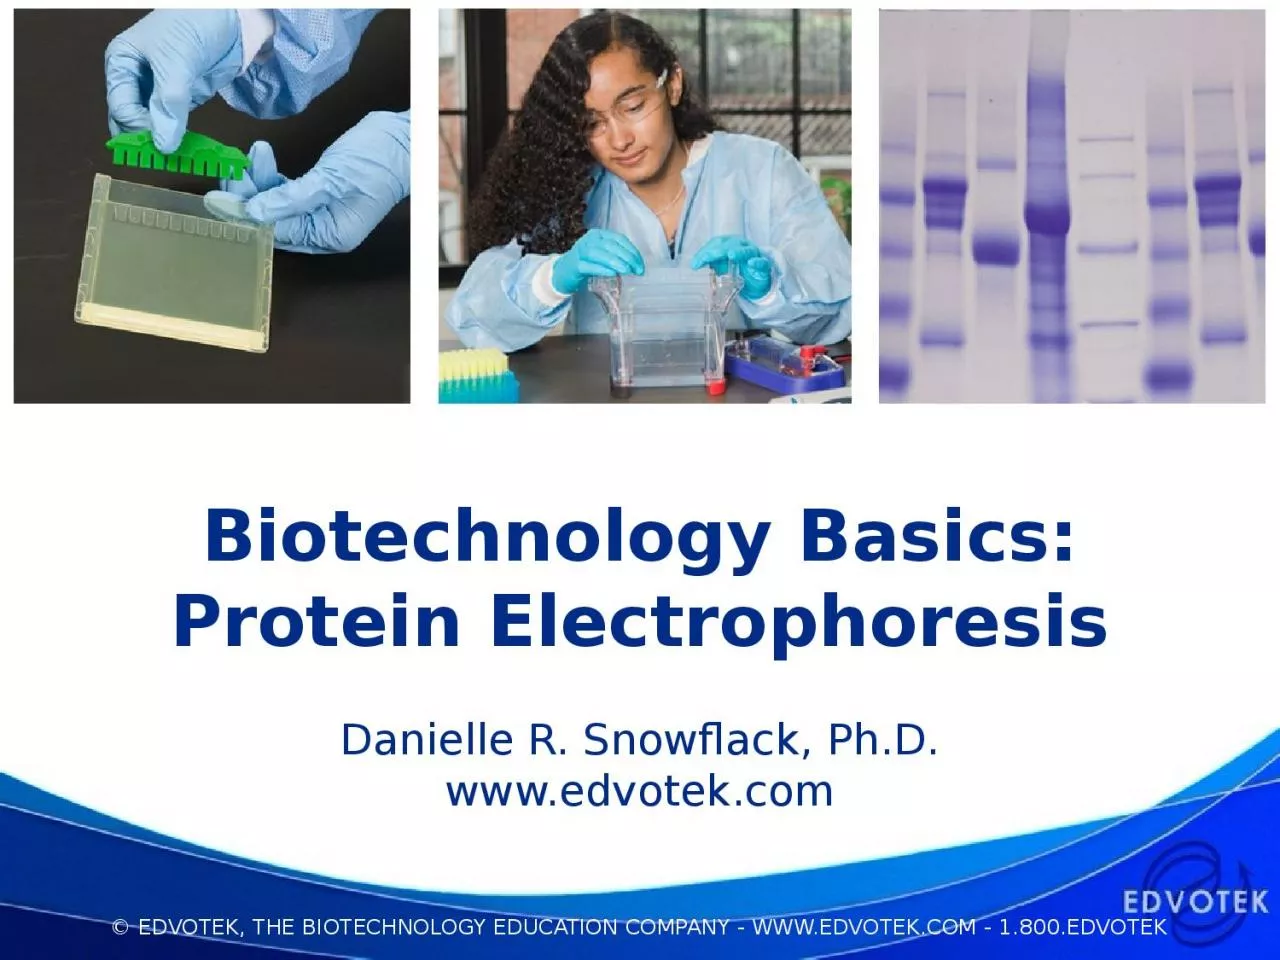 Biotechnology Basics: Protein Electrophoresis